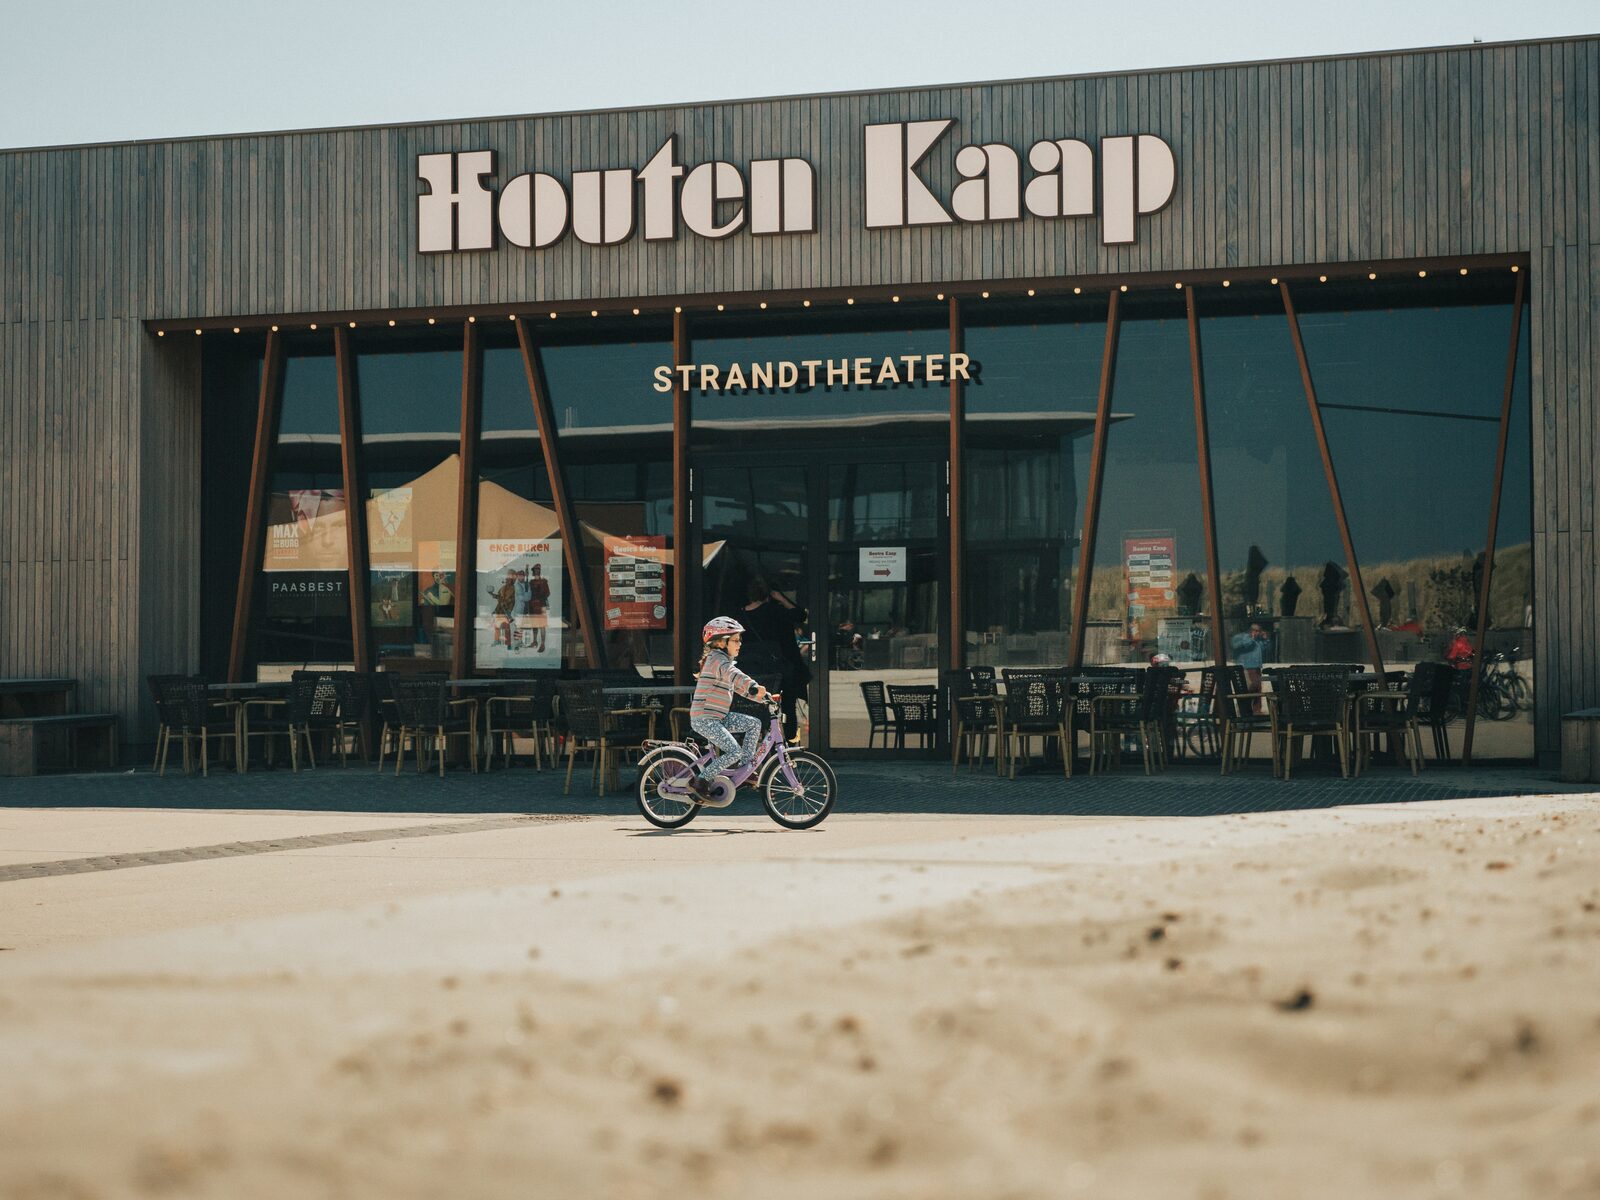 Beach theater Houten Kaap in Ouddorp